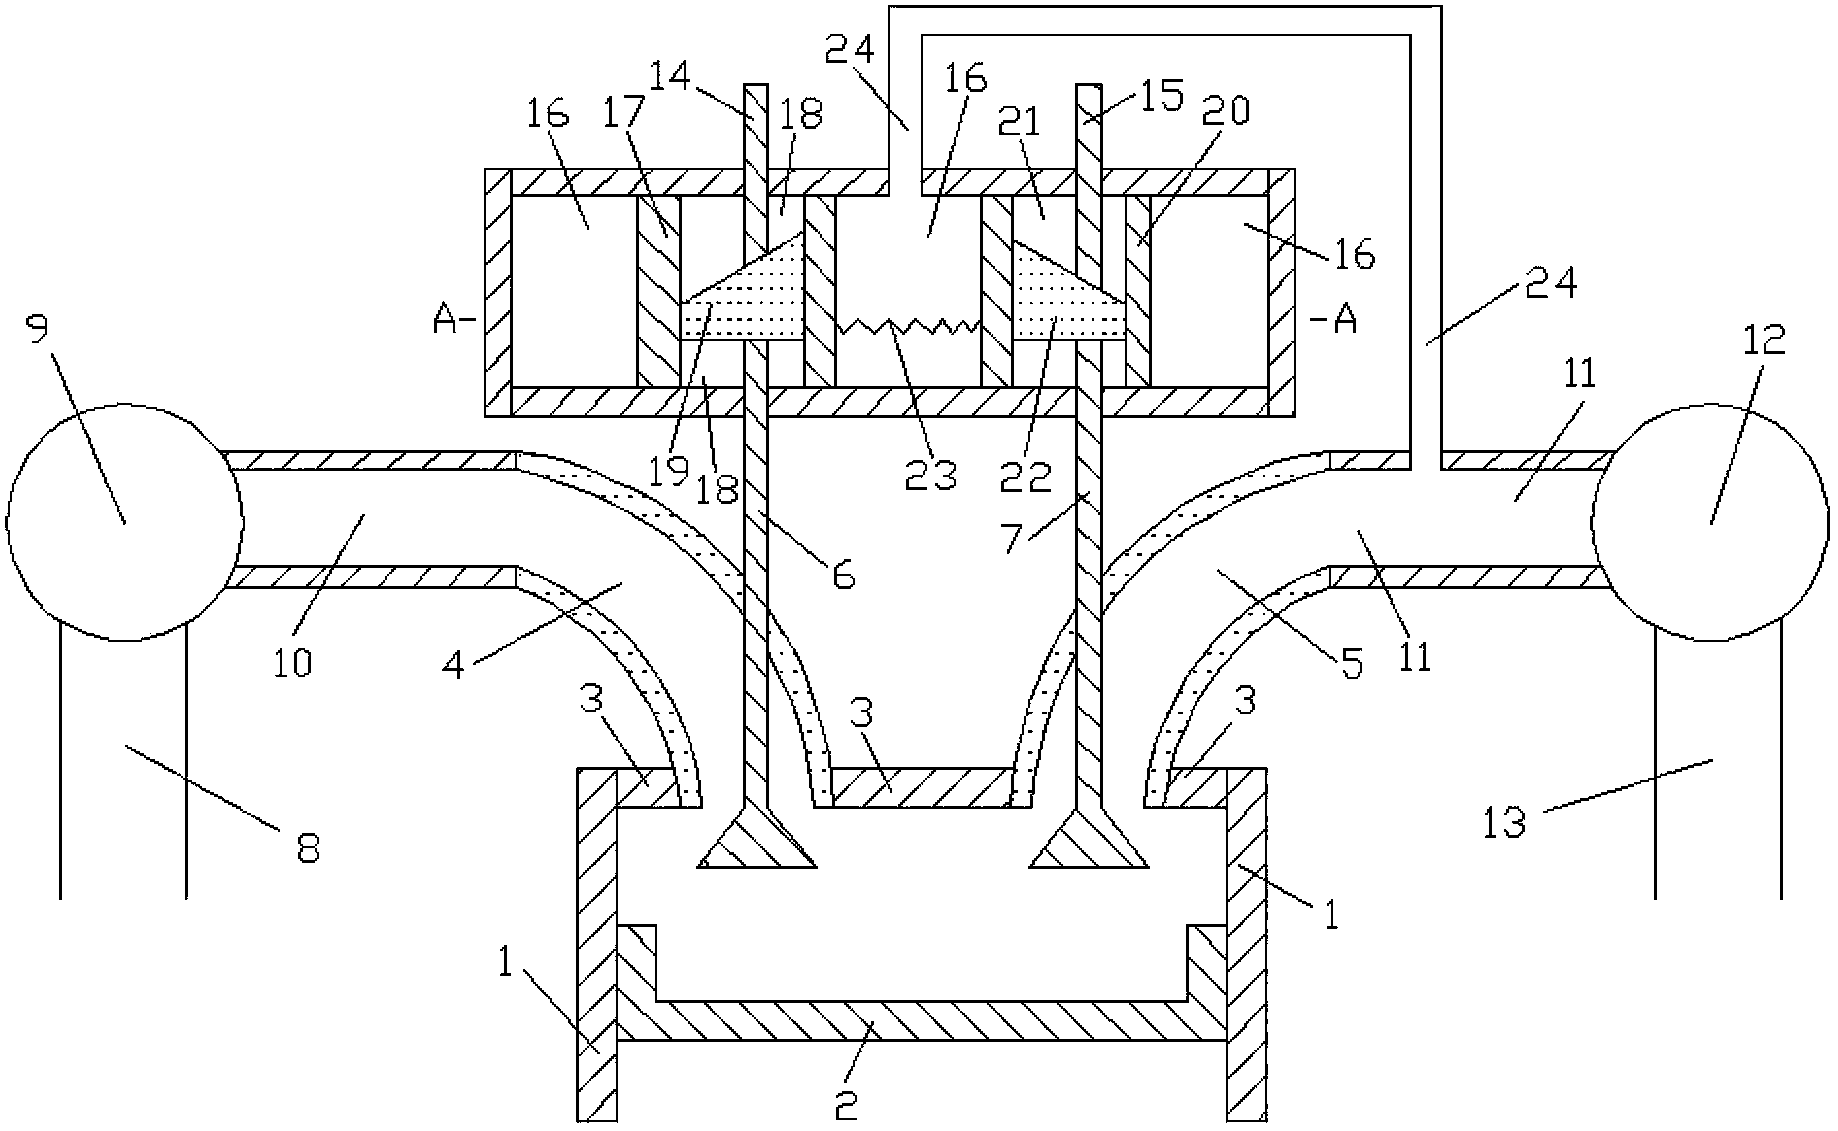 Upper-section sliding device for mechanical valve